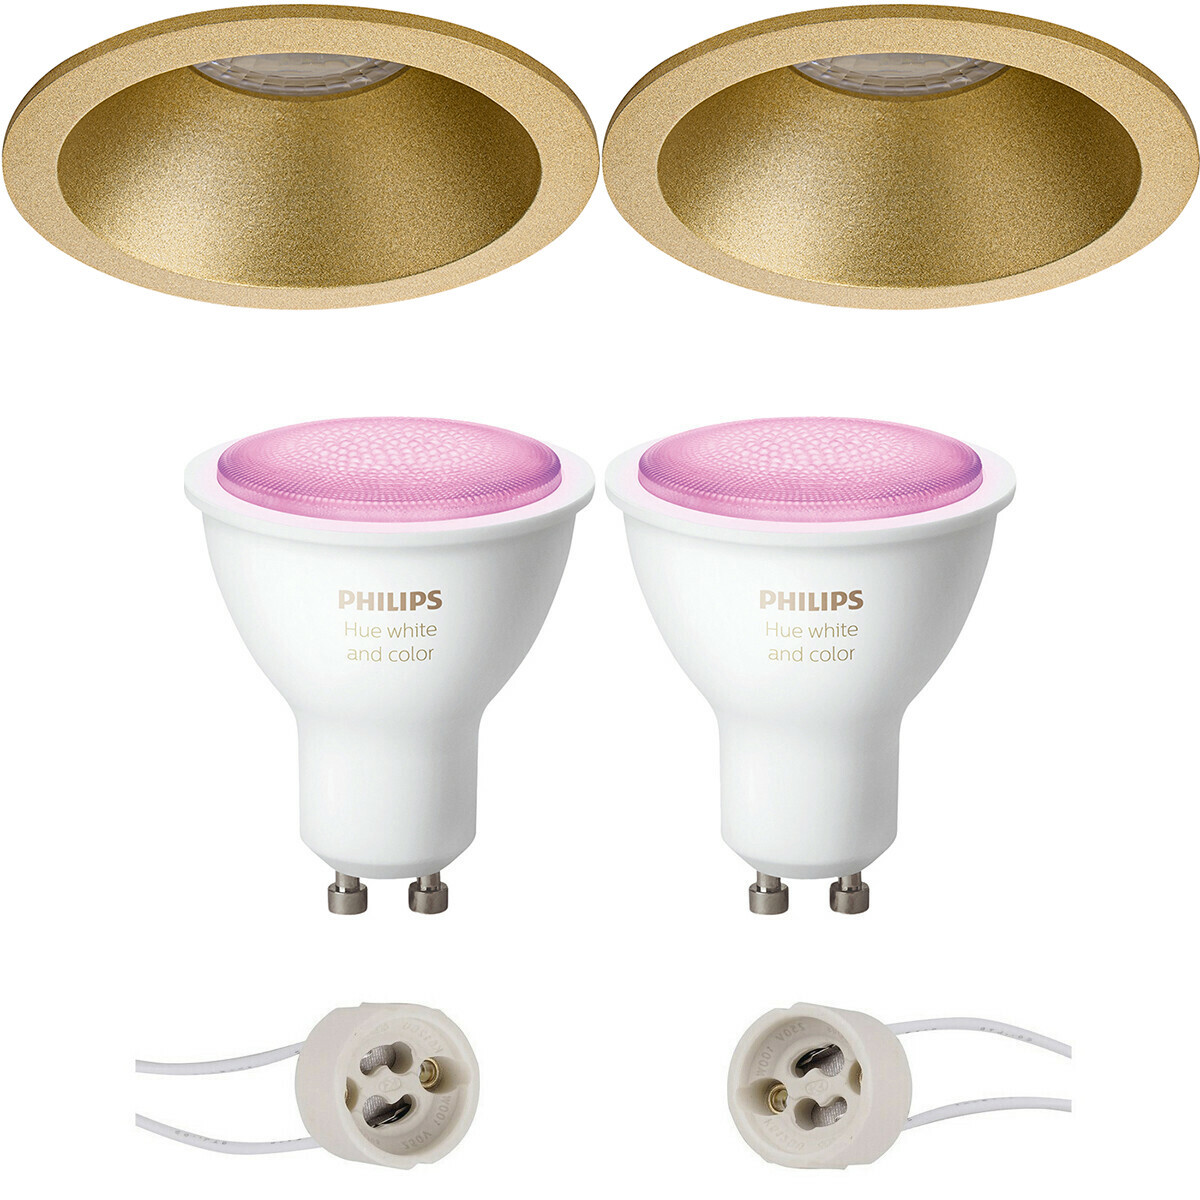 Pragmi Pollon Pro - Inbouw Rond - Mat Goud - Verdiept - Ø82mm - Philips Hue - LED Spot Set GU10 - White and Color Ambiance - Bluetooth